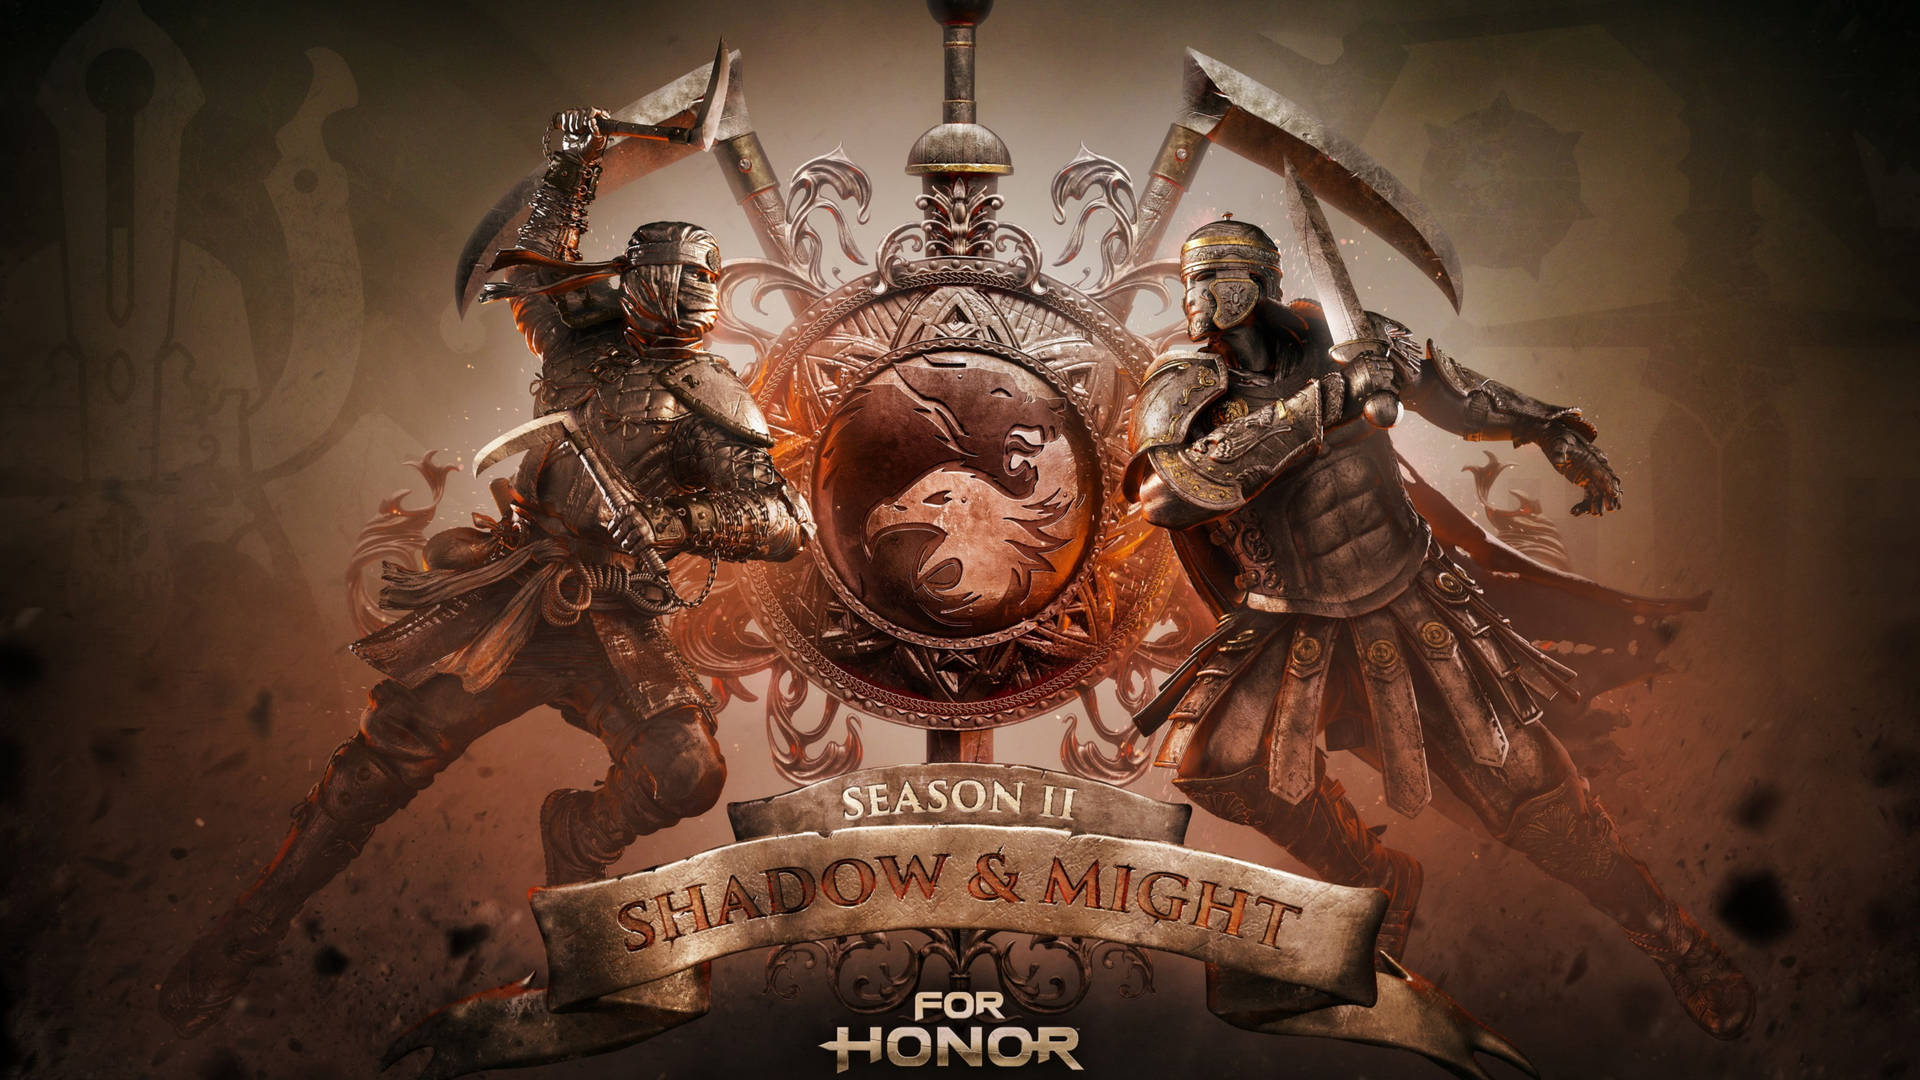 For Honor 4k Season 2 Poster Wallpaper